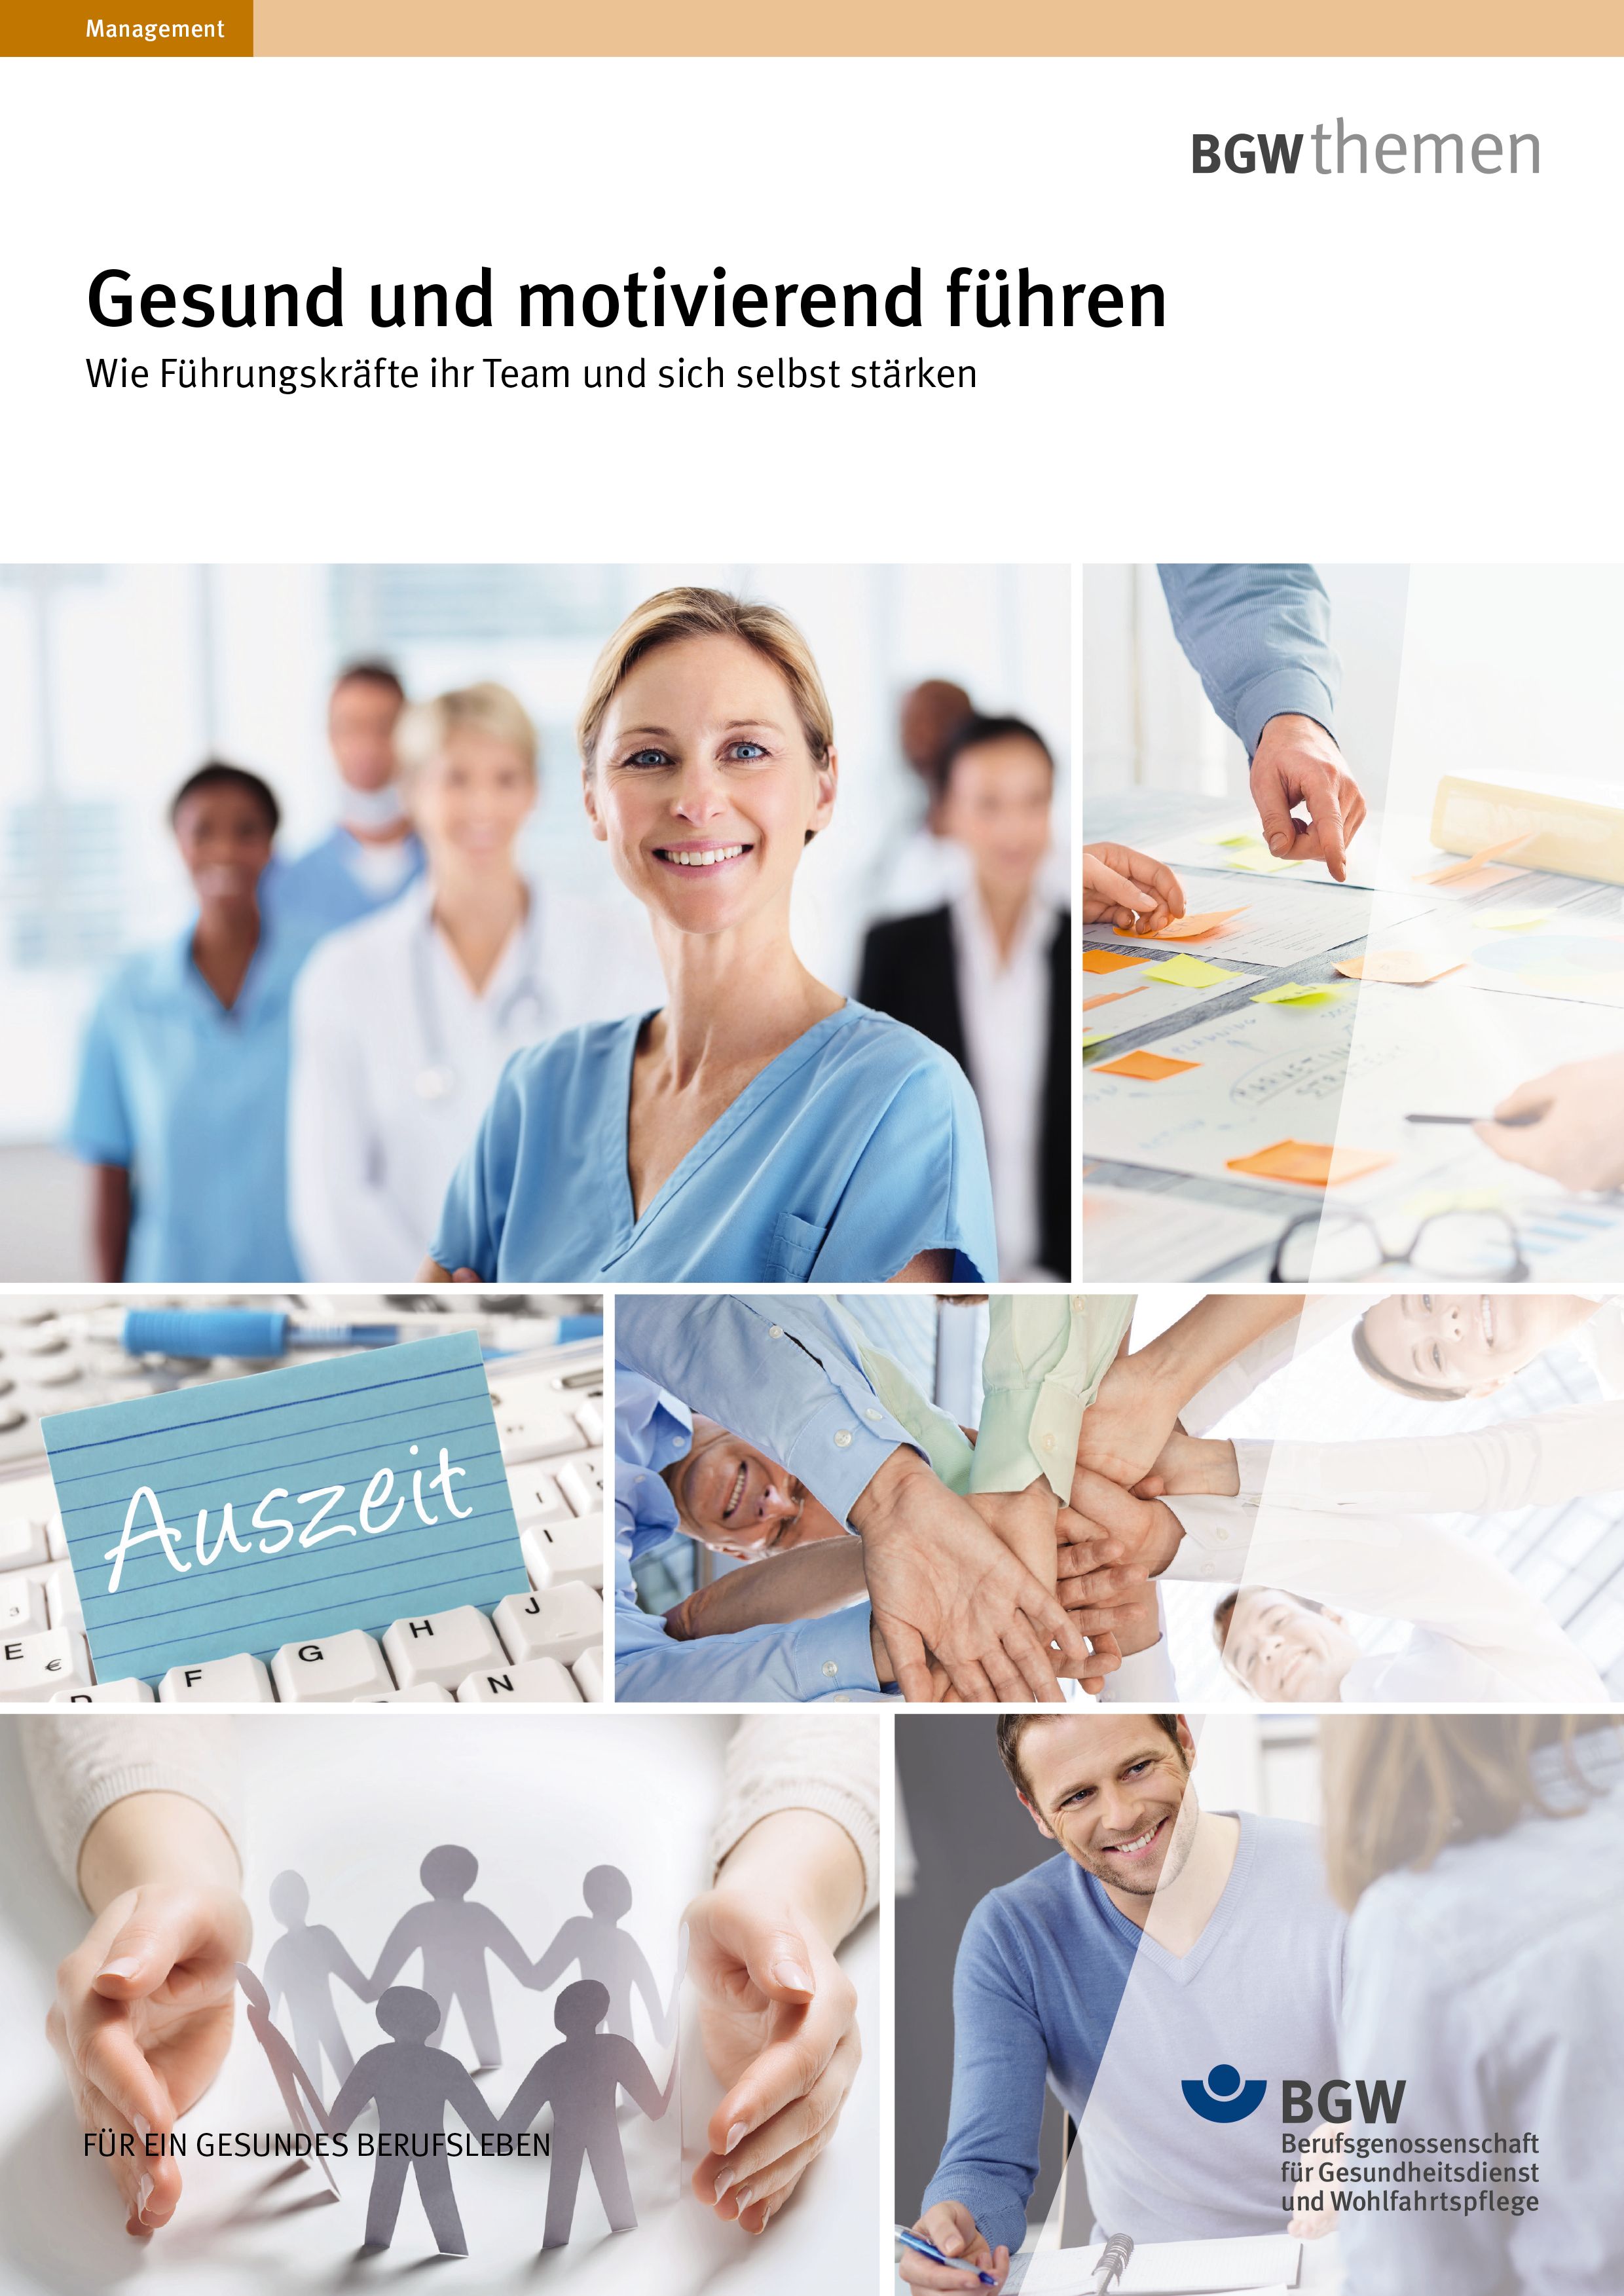 Titel: Gesund und motivierend führen - Bildcollage mit Szenen aus Krankenhaus, Schulung, Büro, Beratung sowie Symbolfotos zu Team und Gesundheit